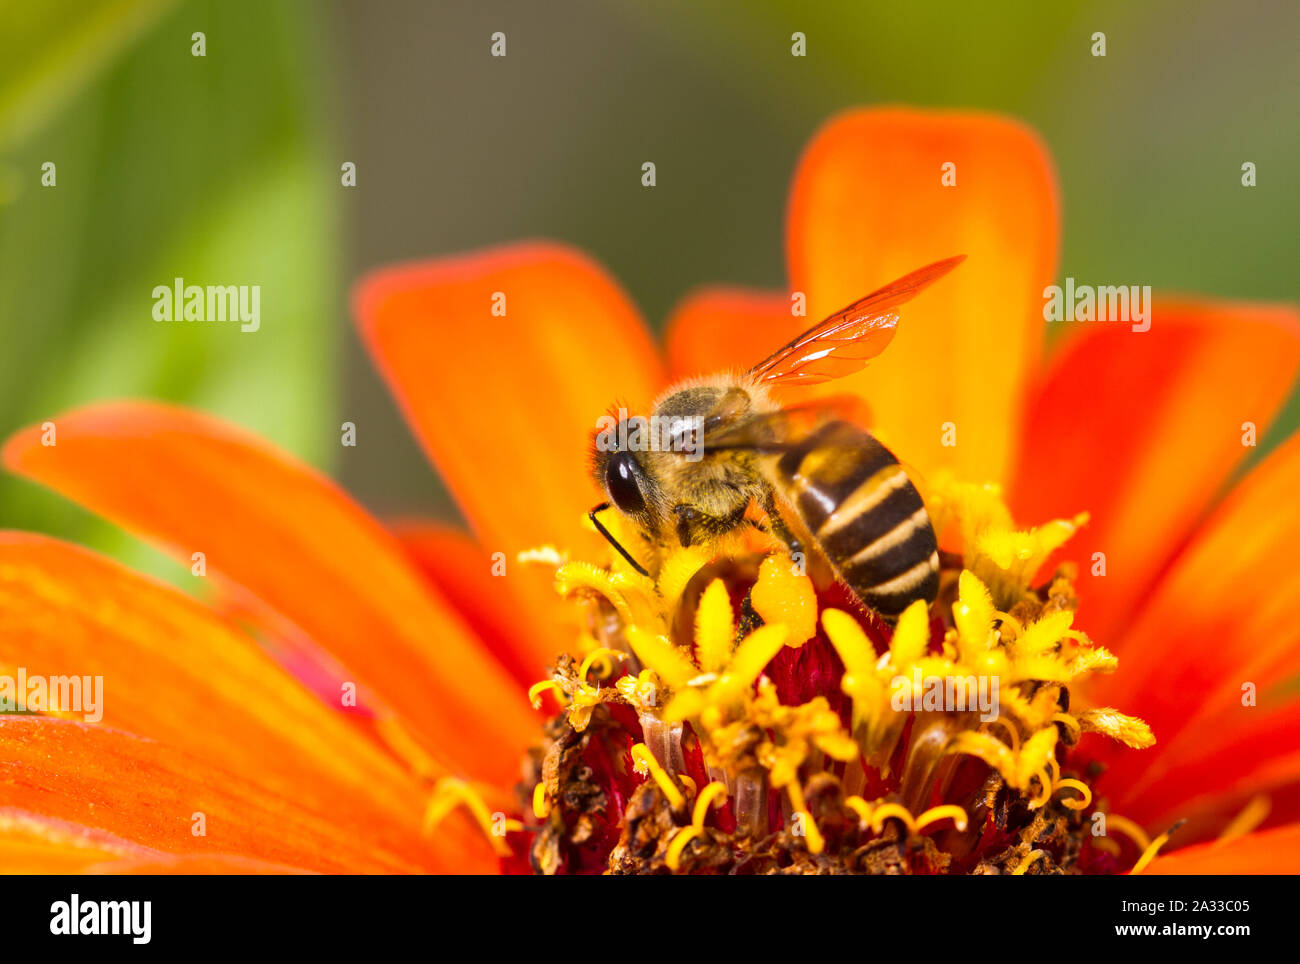 Busy Bee ha ocupado la polinización de las flores en el verano de luz Foto de stock